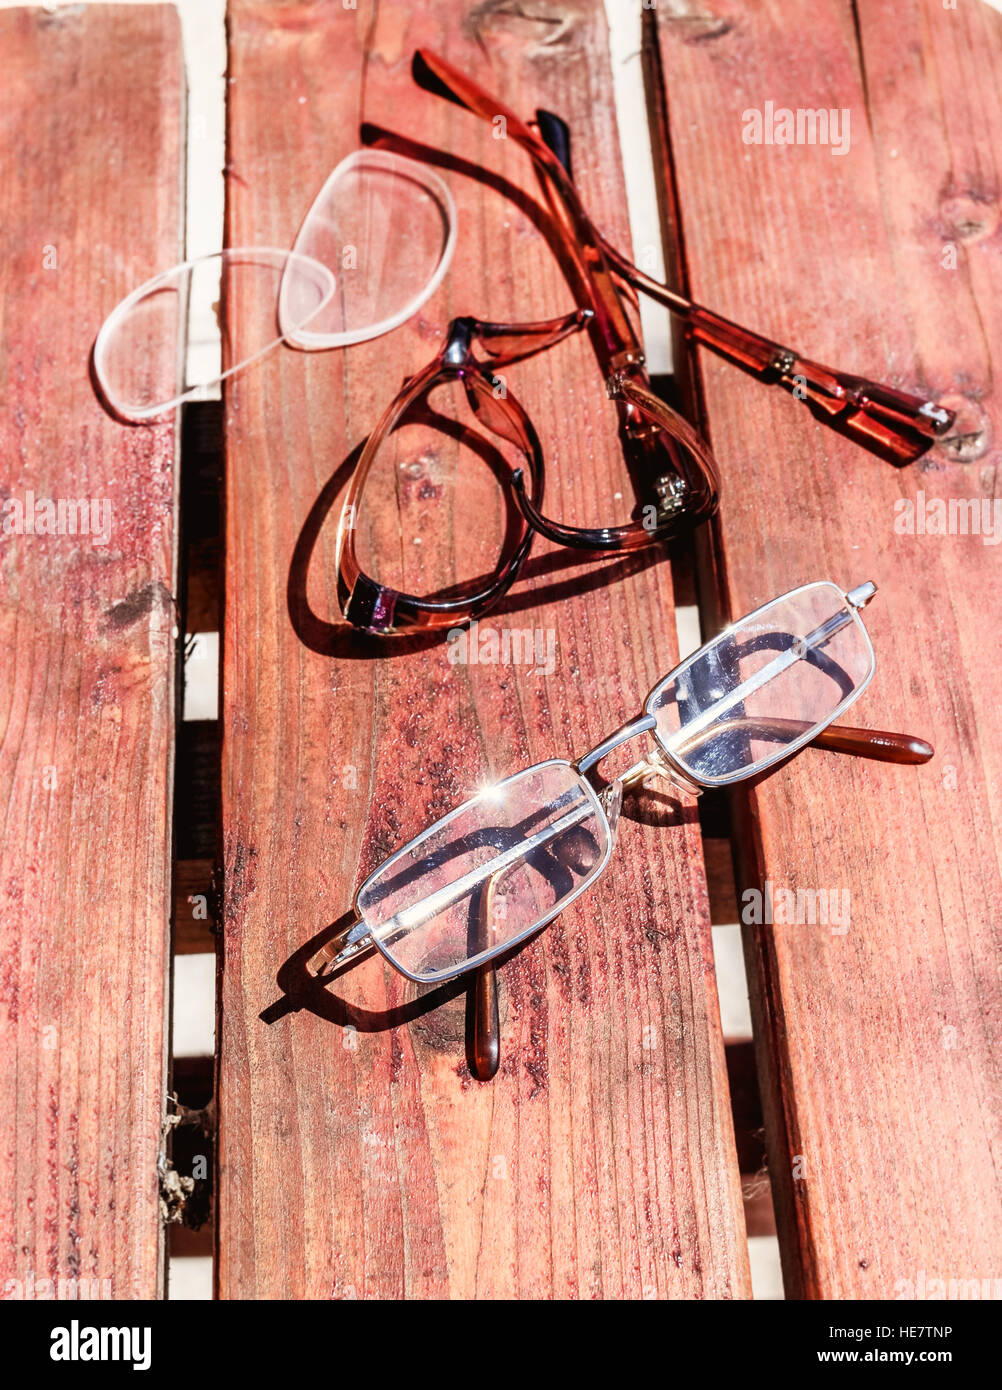 Brille kaputt und ganze auf sonnigen Sommerholz Stockfotografie - Alamy